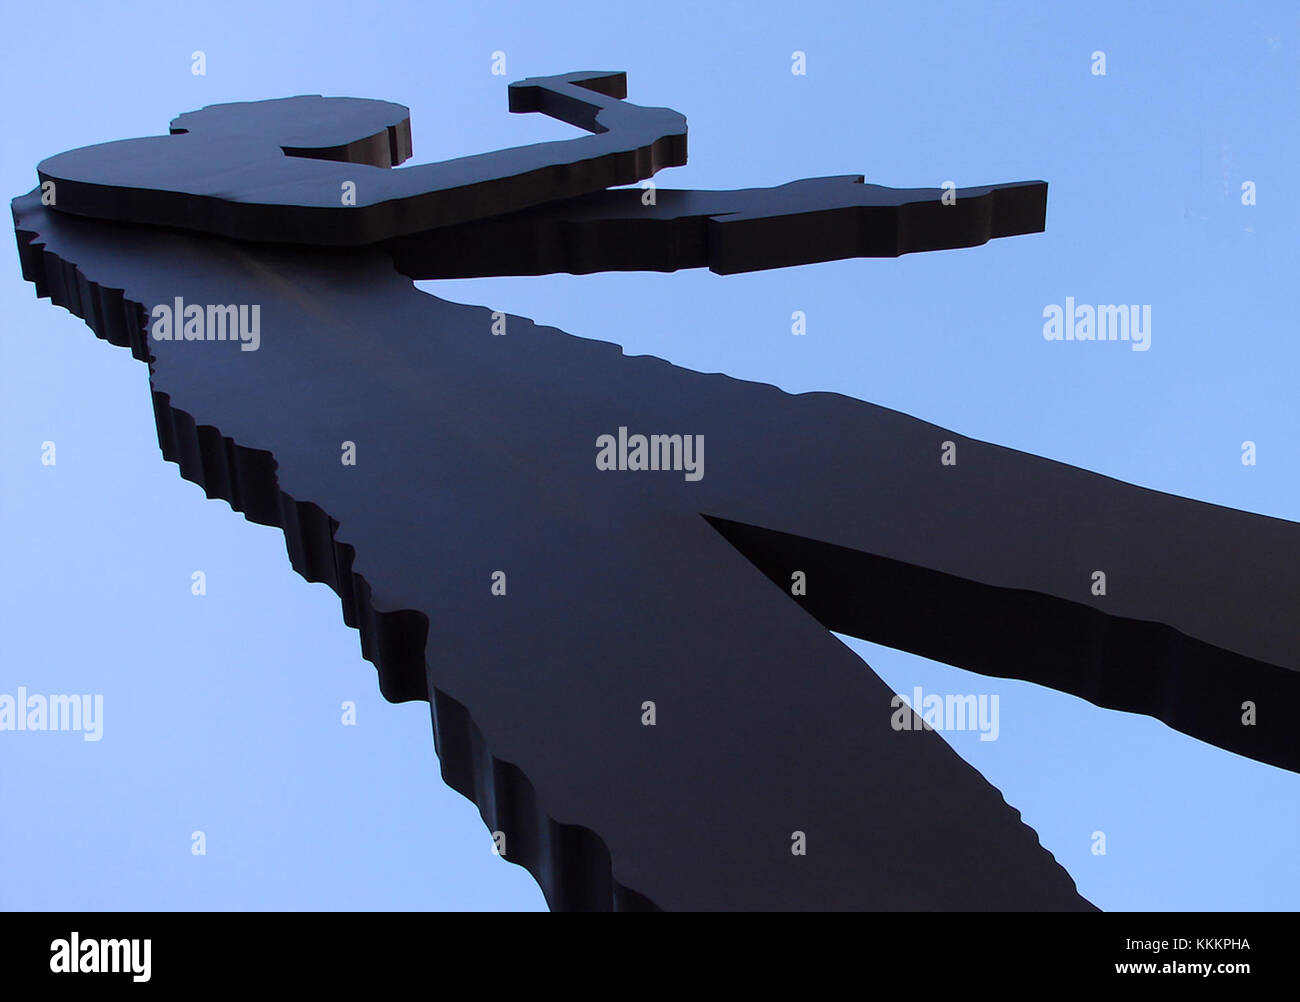 Seoul Hämmering man - der größte der Hämmering man steht 72 Meter hoch und wiegt 50 Tonnen. Der Arm des Hämmers 'hämmert' leise und sanft einmal in einer Minute alle sieben Sekunden. Korea-Seoul Hammering Man 11-00297 Stockfoto